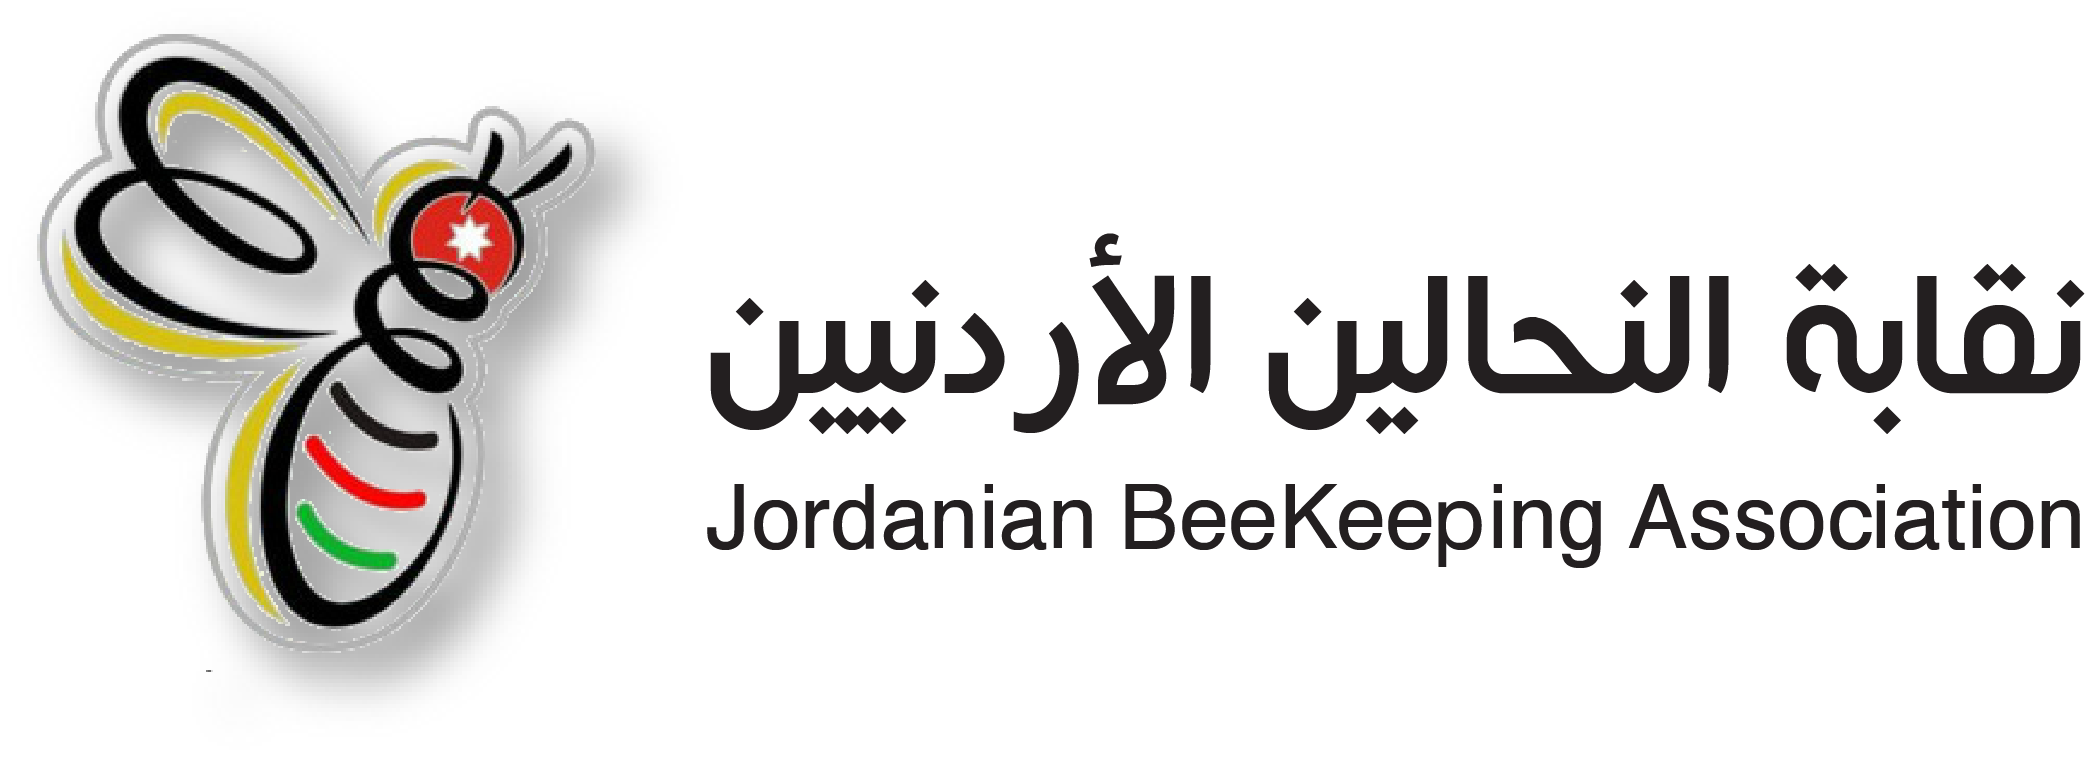 jordanbeekeeping